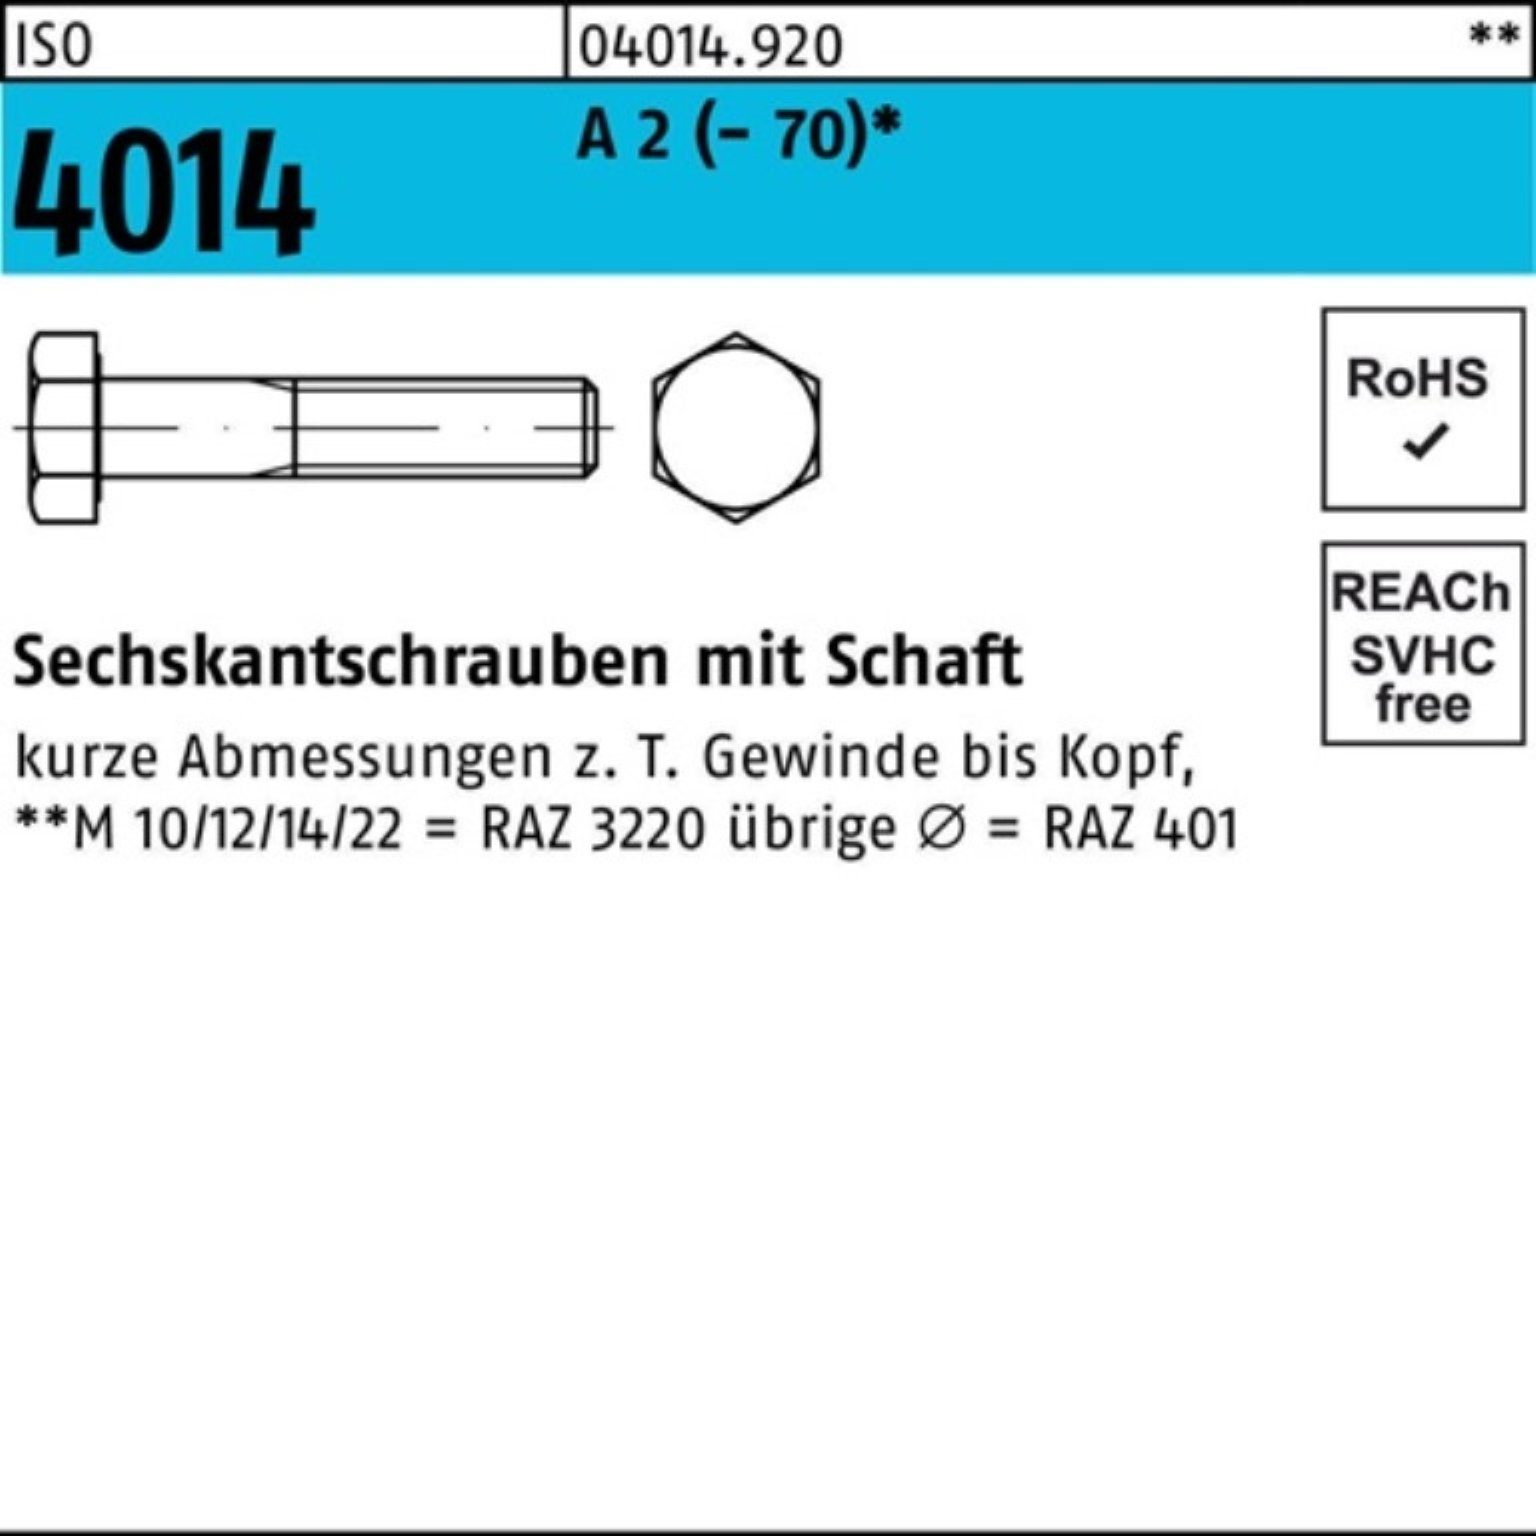 25 St 2 100er Pack Sechskantschraube A 170 M8x 4014 Bufab Sechskantschraube Schaft (70) ISO